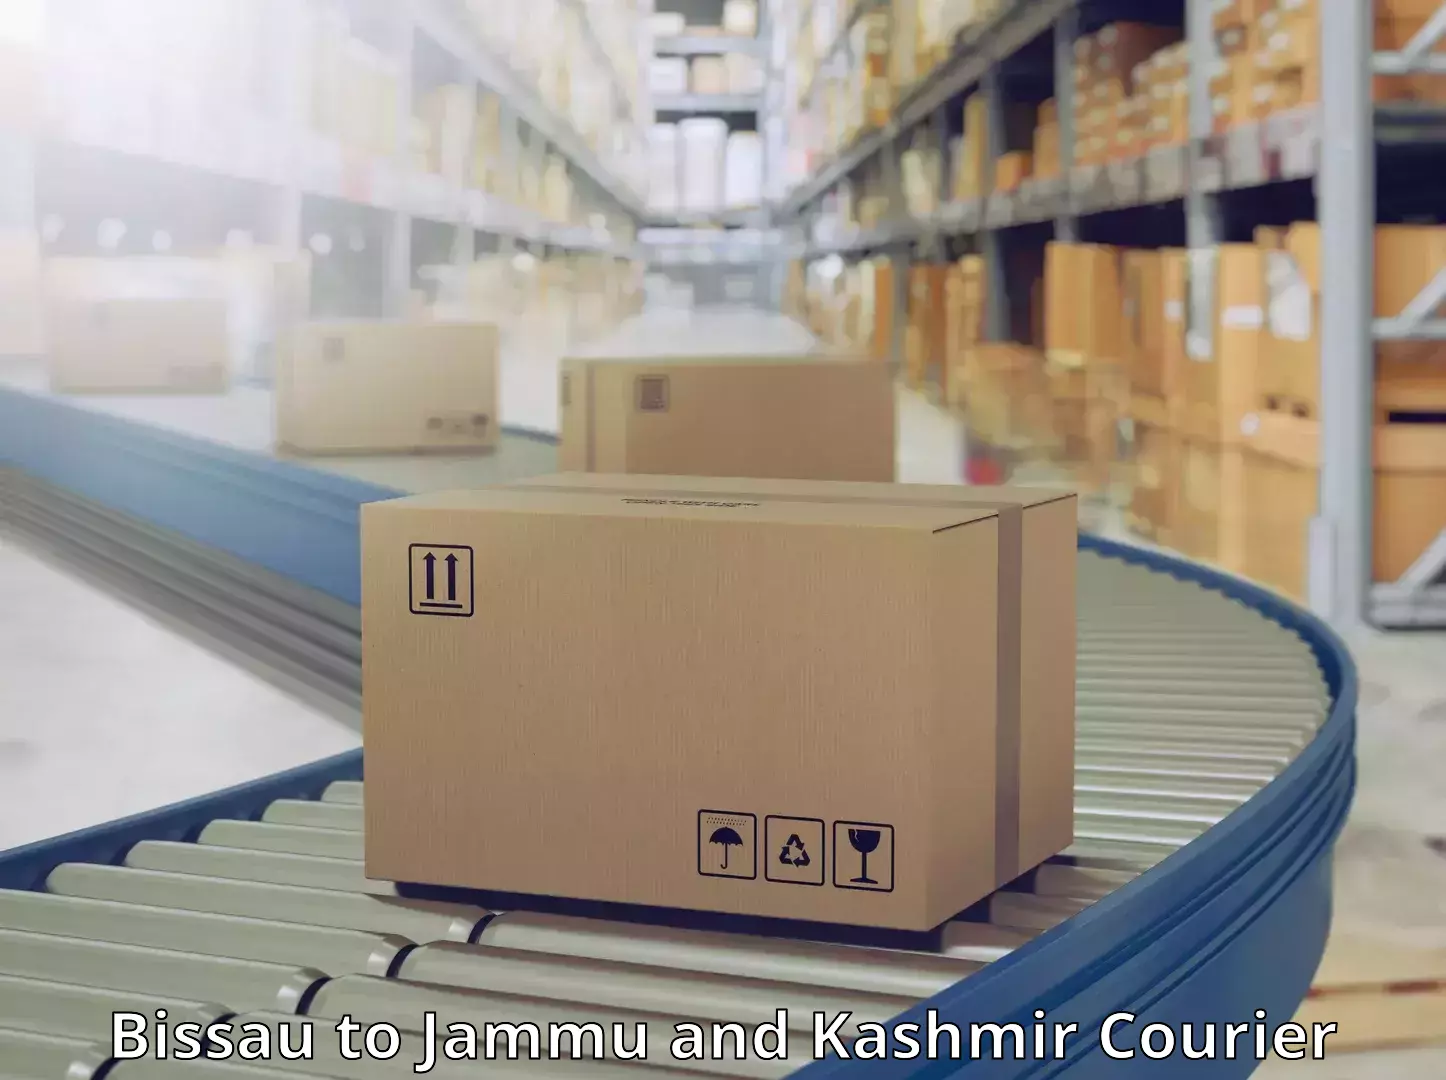 Courier service efficiency in Bissau to Srinagar Kashmir